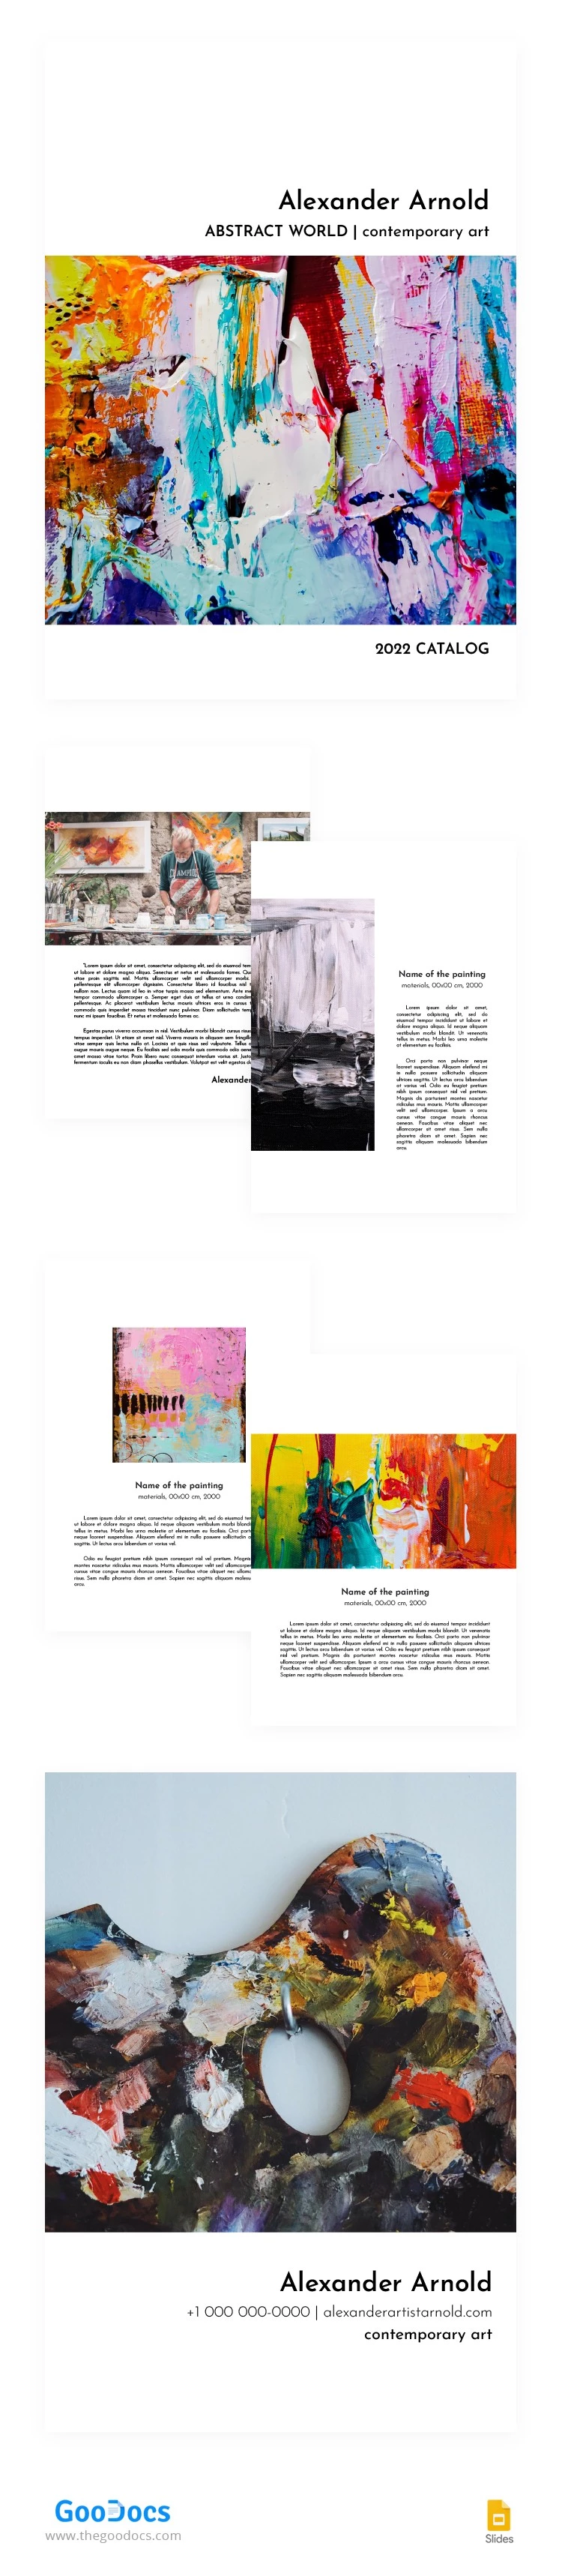 Catálogo de Artistas Abstractos - free Google Docs Template - 10062785